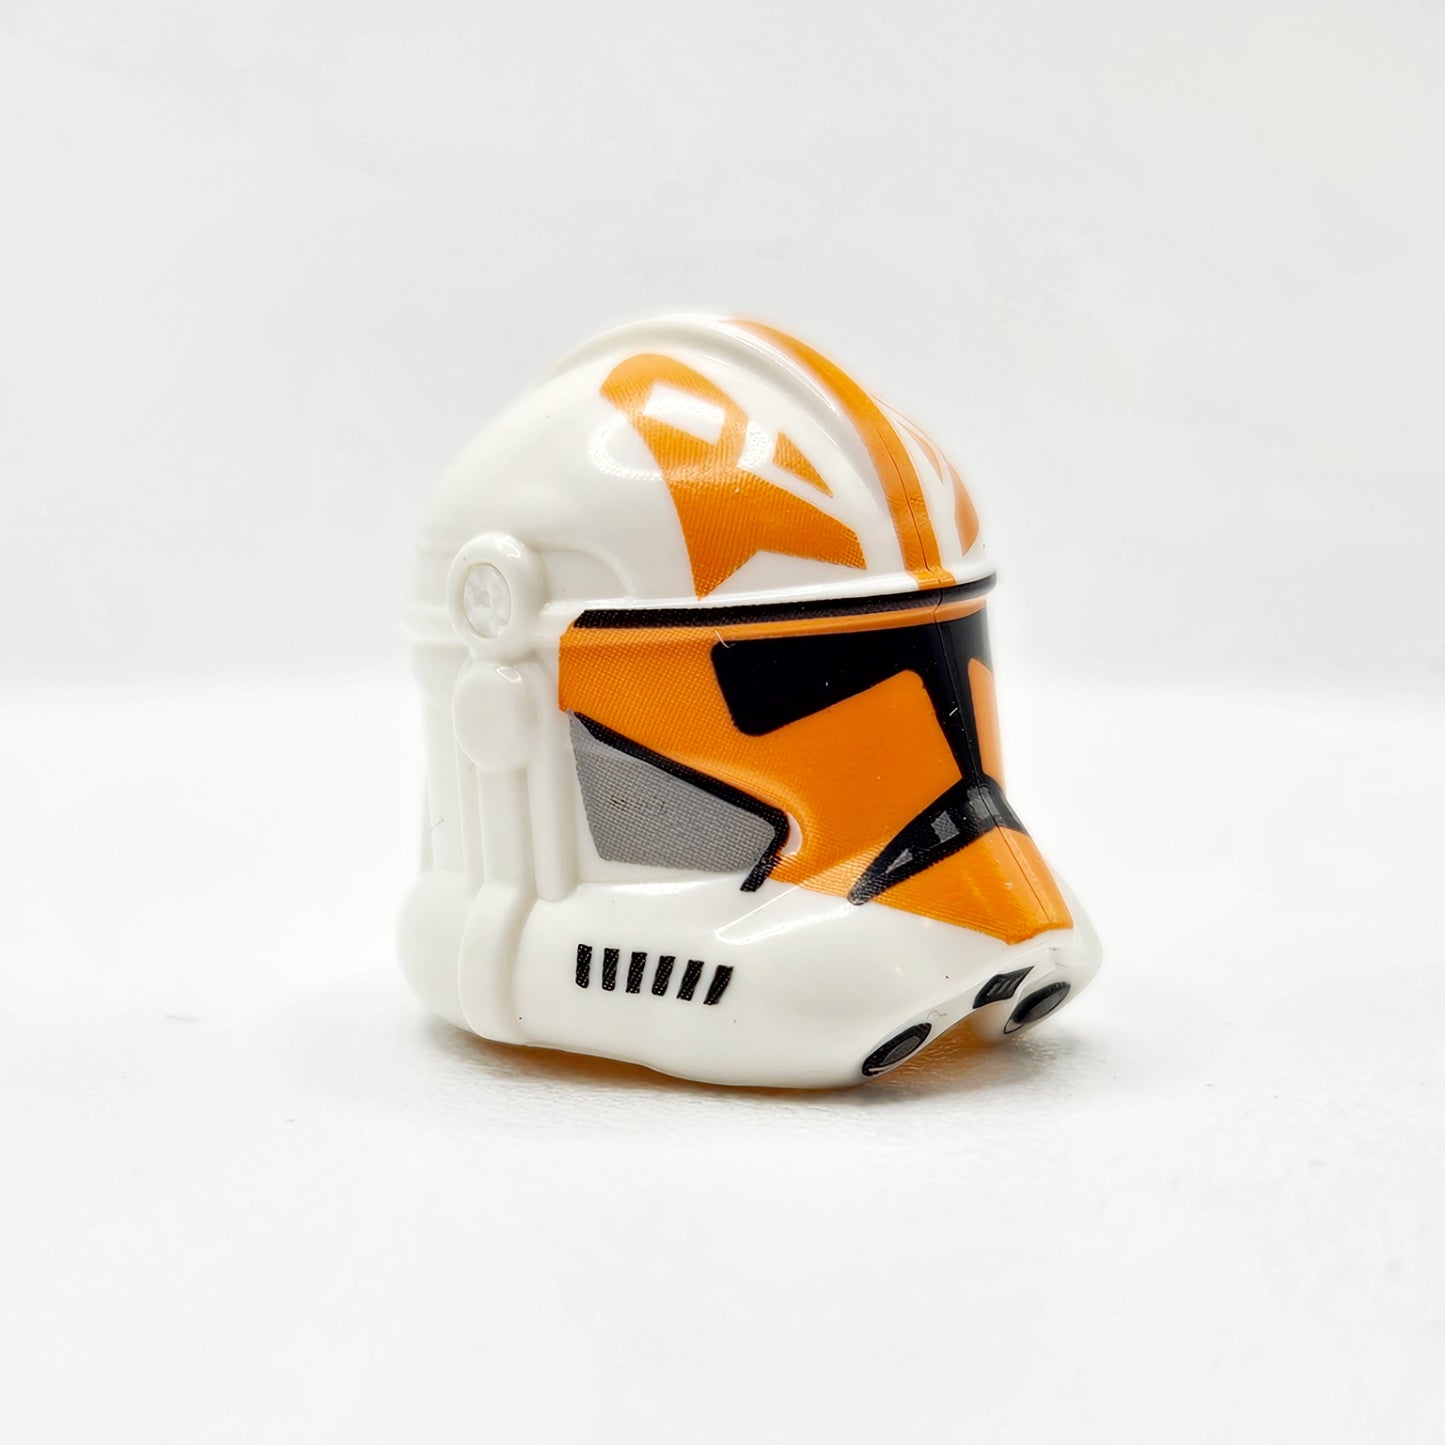 Clone Trooper Pods